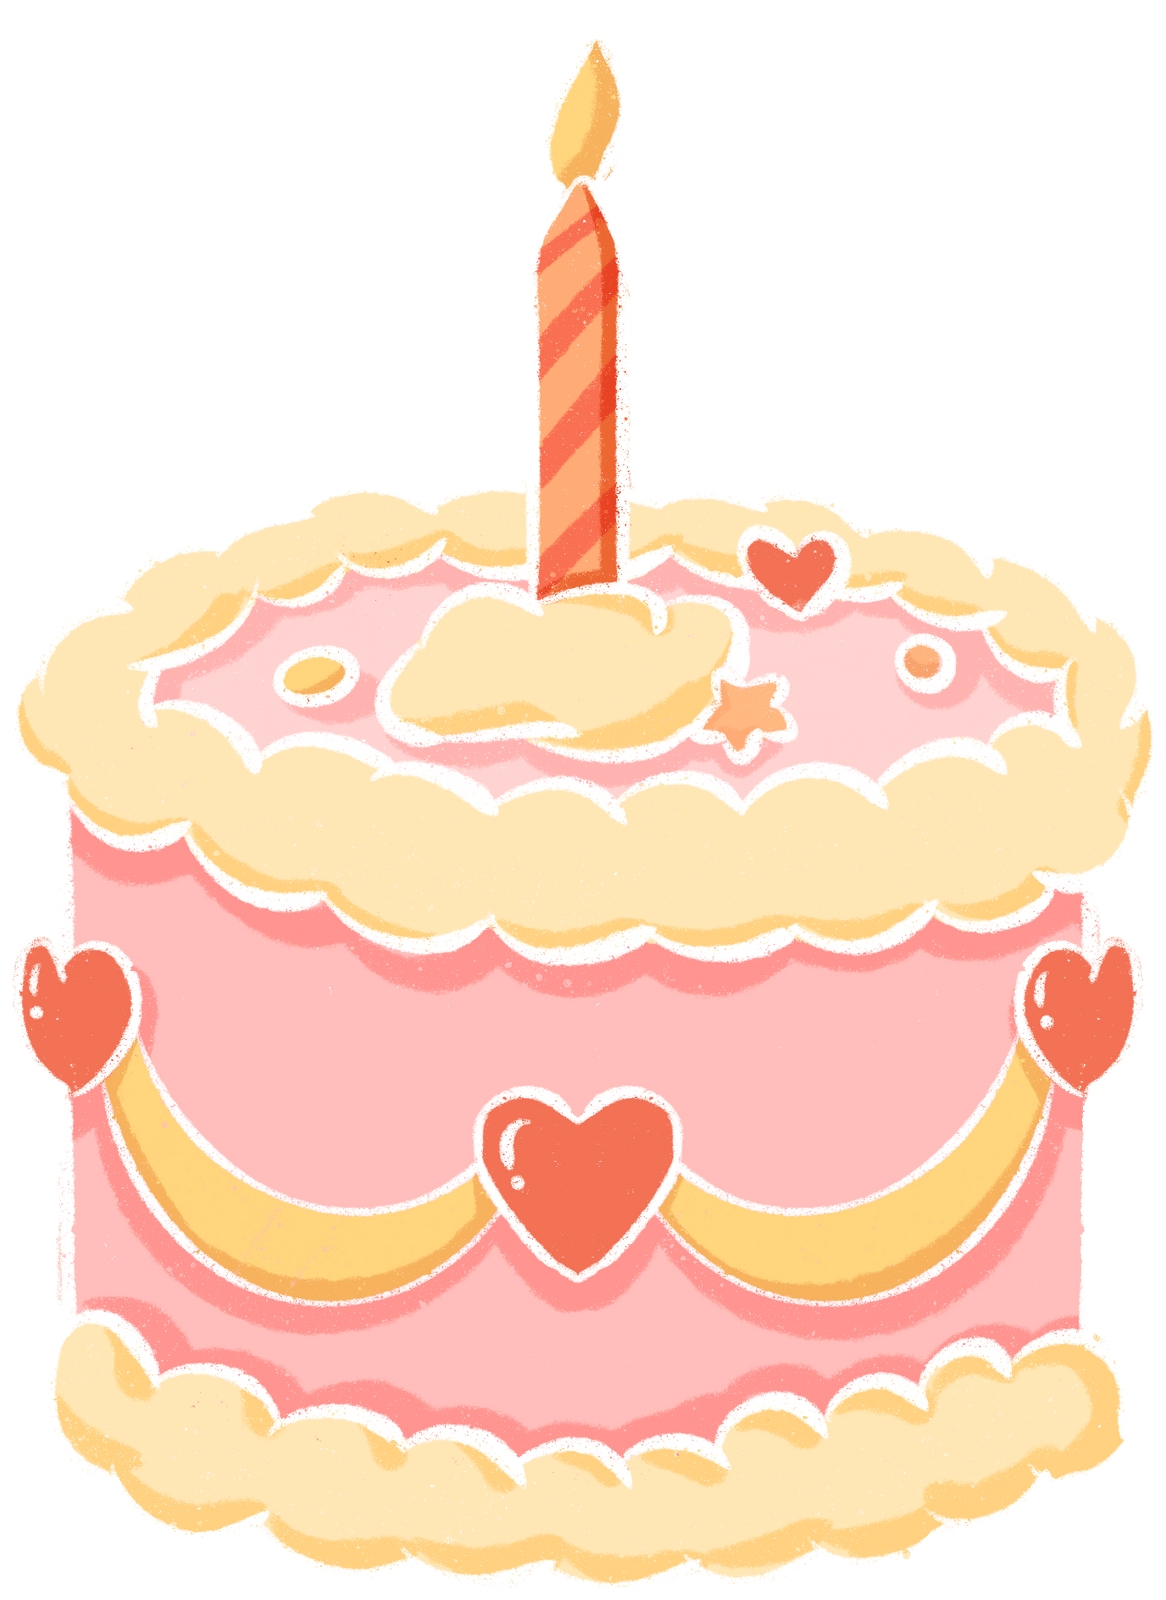 卡通美食的生日蛋糕插画_动漫人物_动漫卡通-图行天下素材网